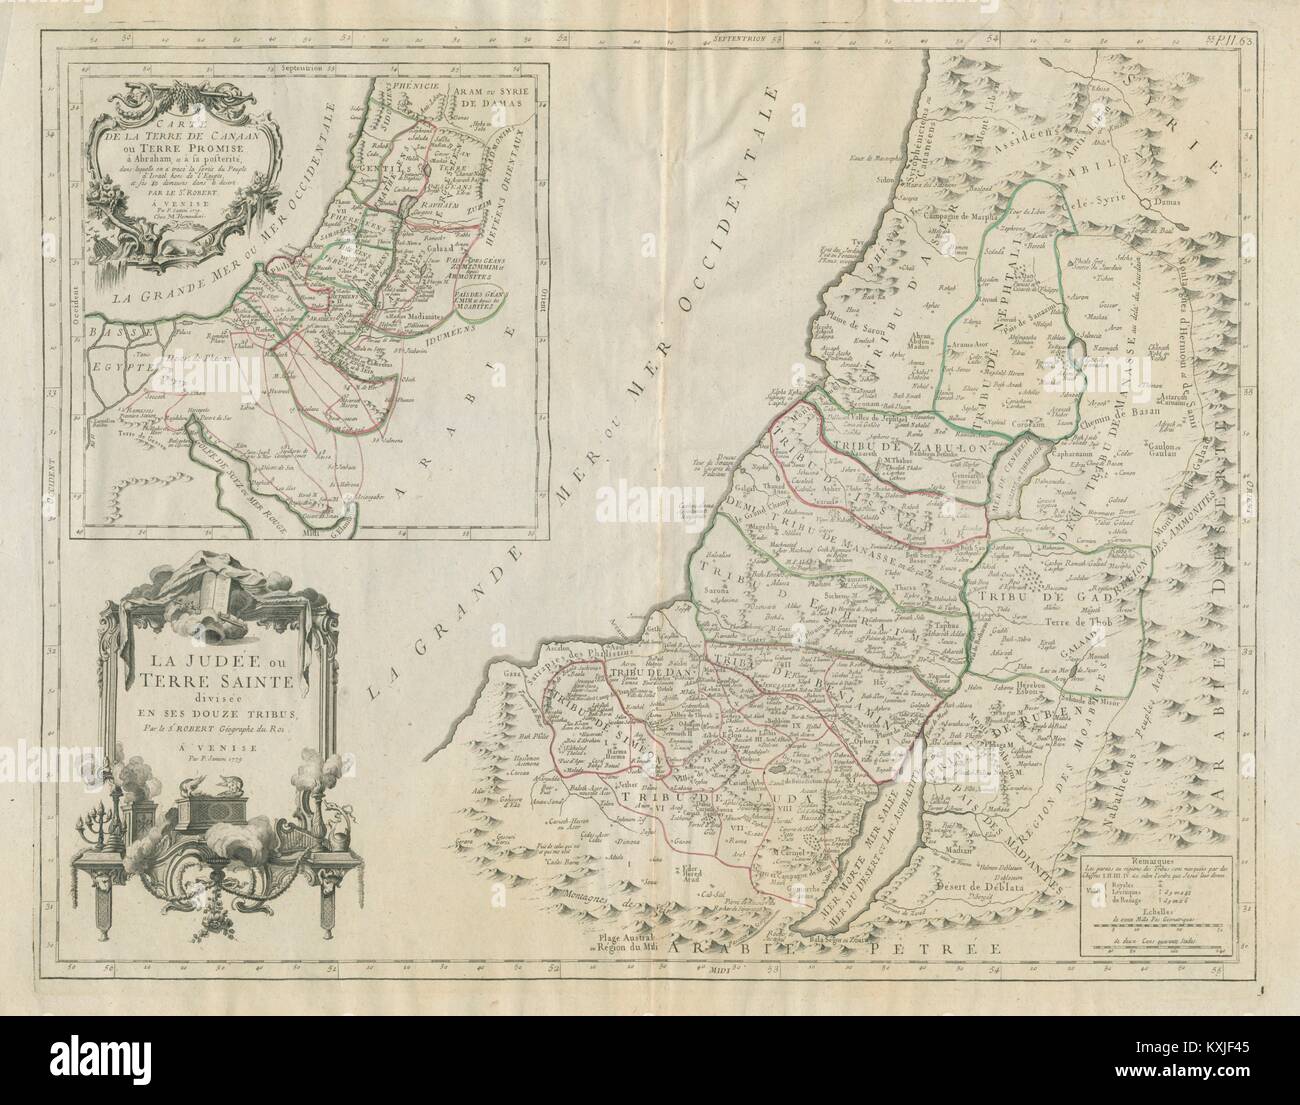 'La Judée ou Terre Sainte divisée en ses douze tribus' SANTINI/VAUGONDY 1784 map Stock Photo